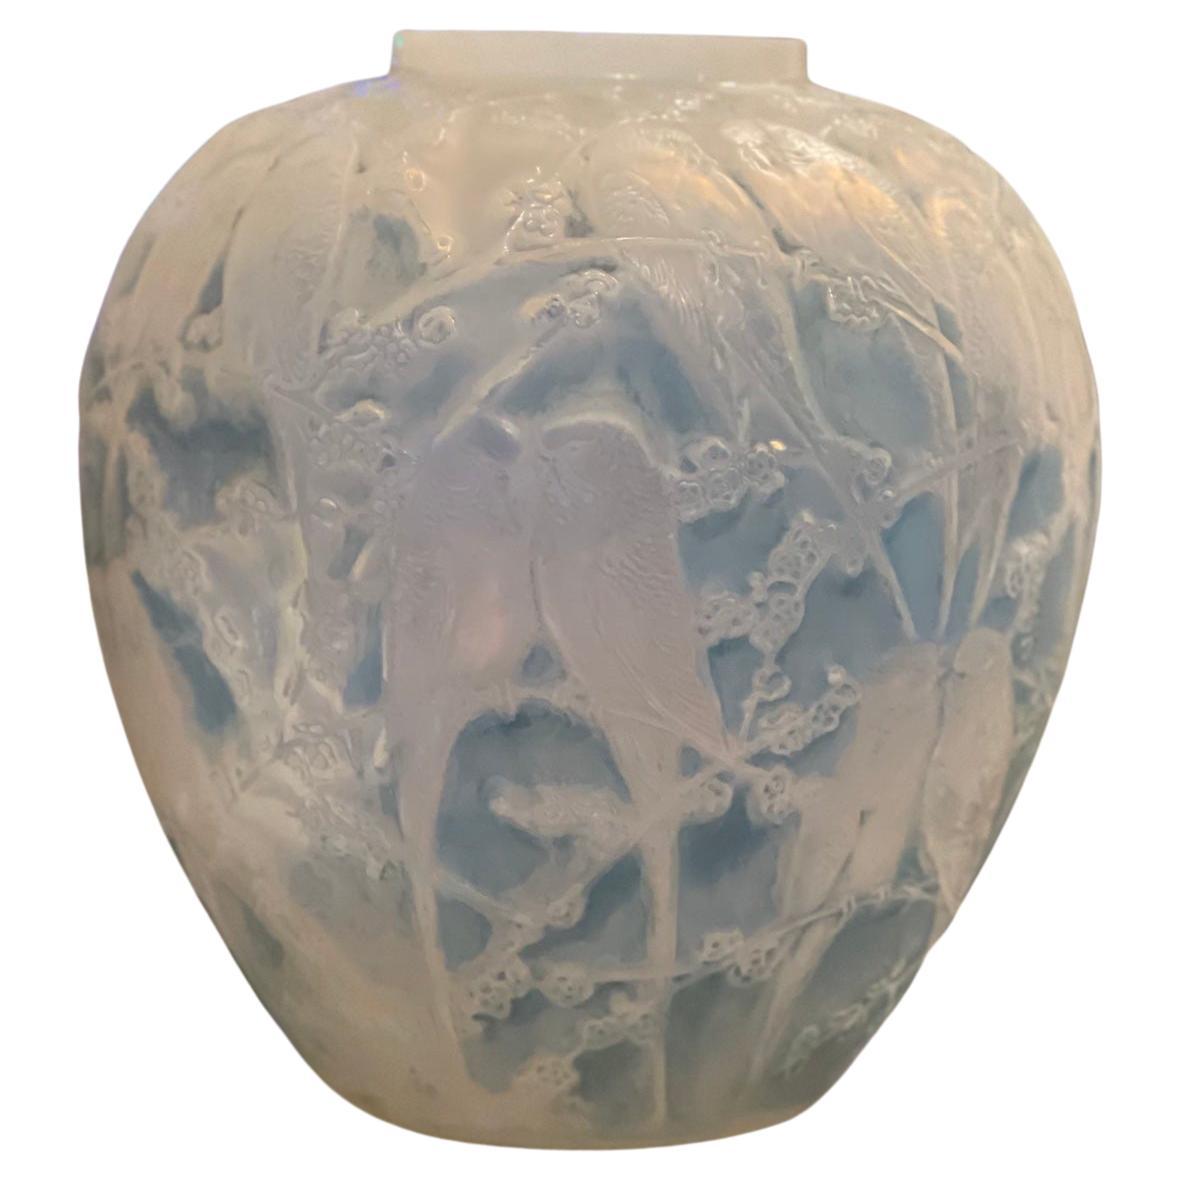 René Lalique Opalescent Vase "Perruches"